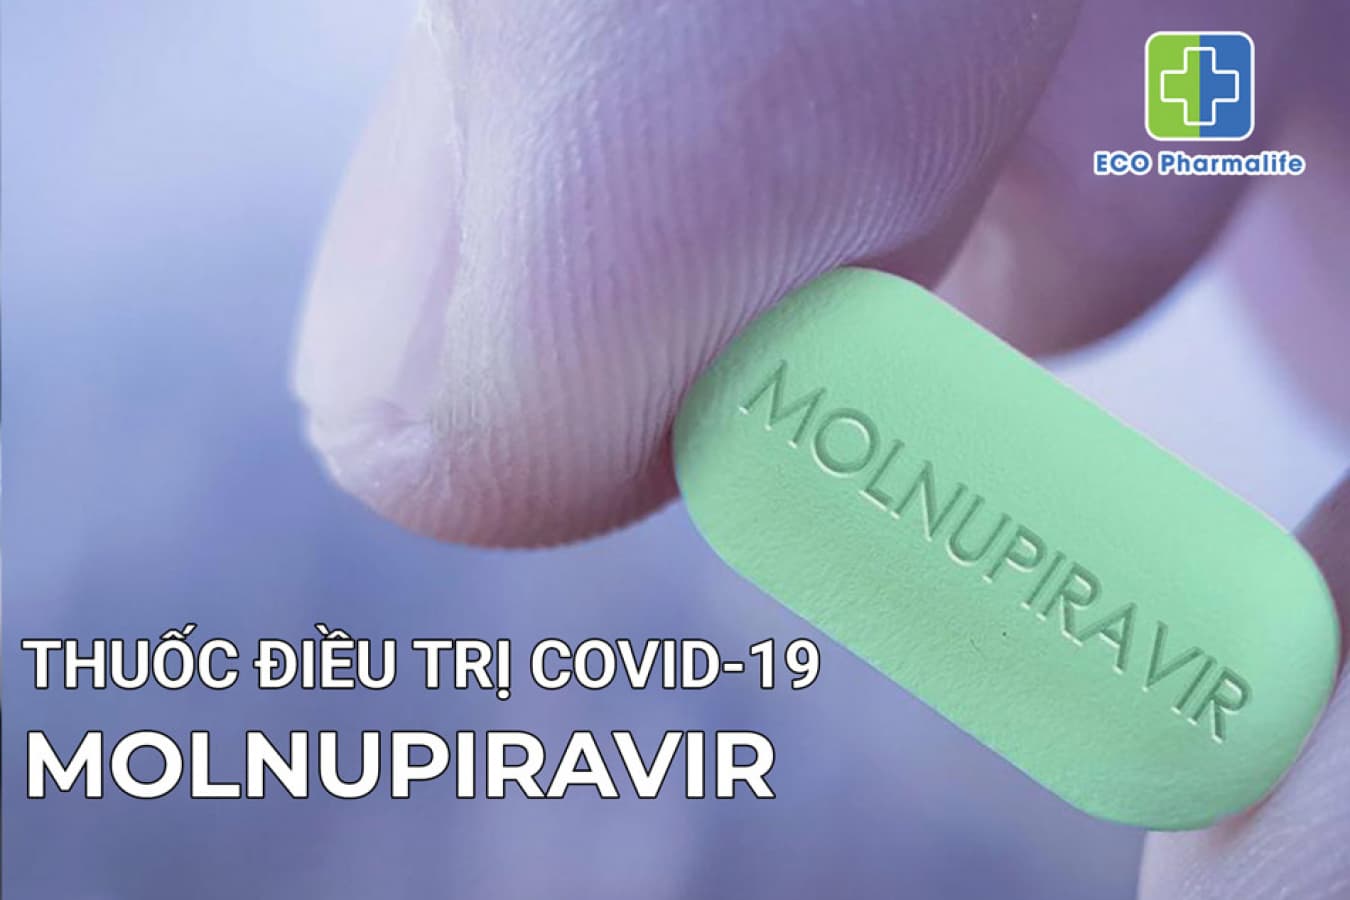 Thuốc Molnupiravir là thuốc gì? Giá bao nhiêu? Mua ở đâu?